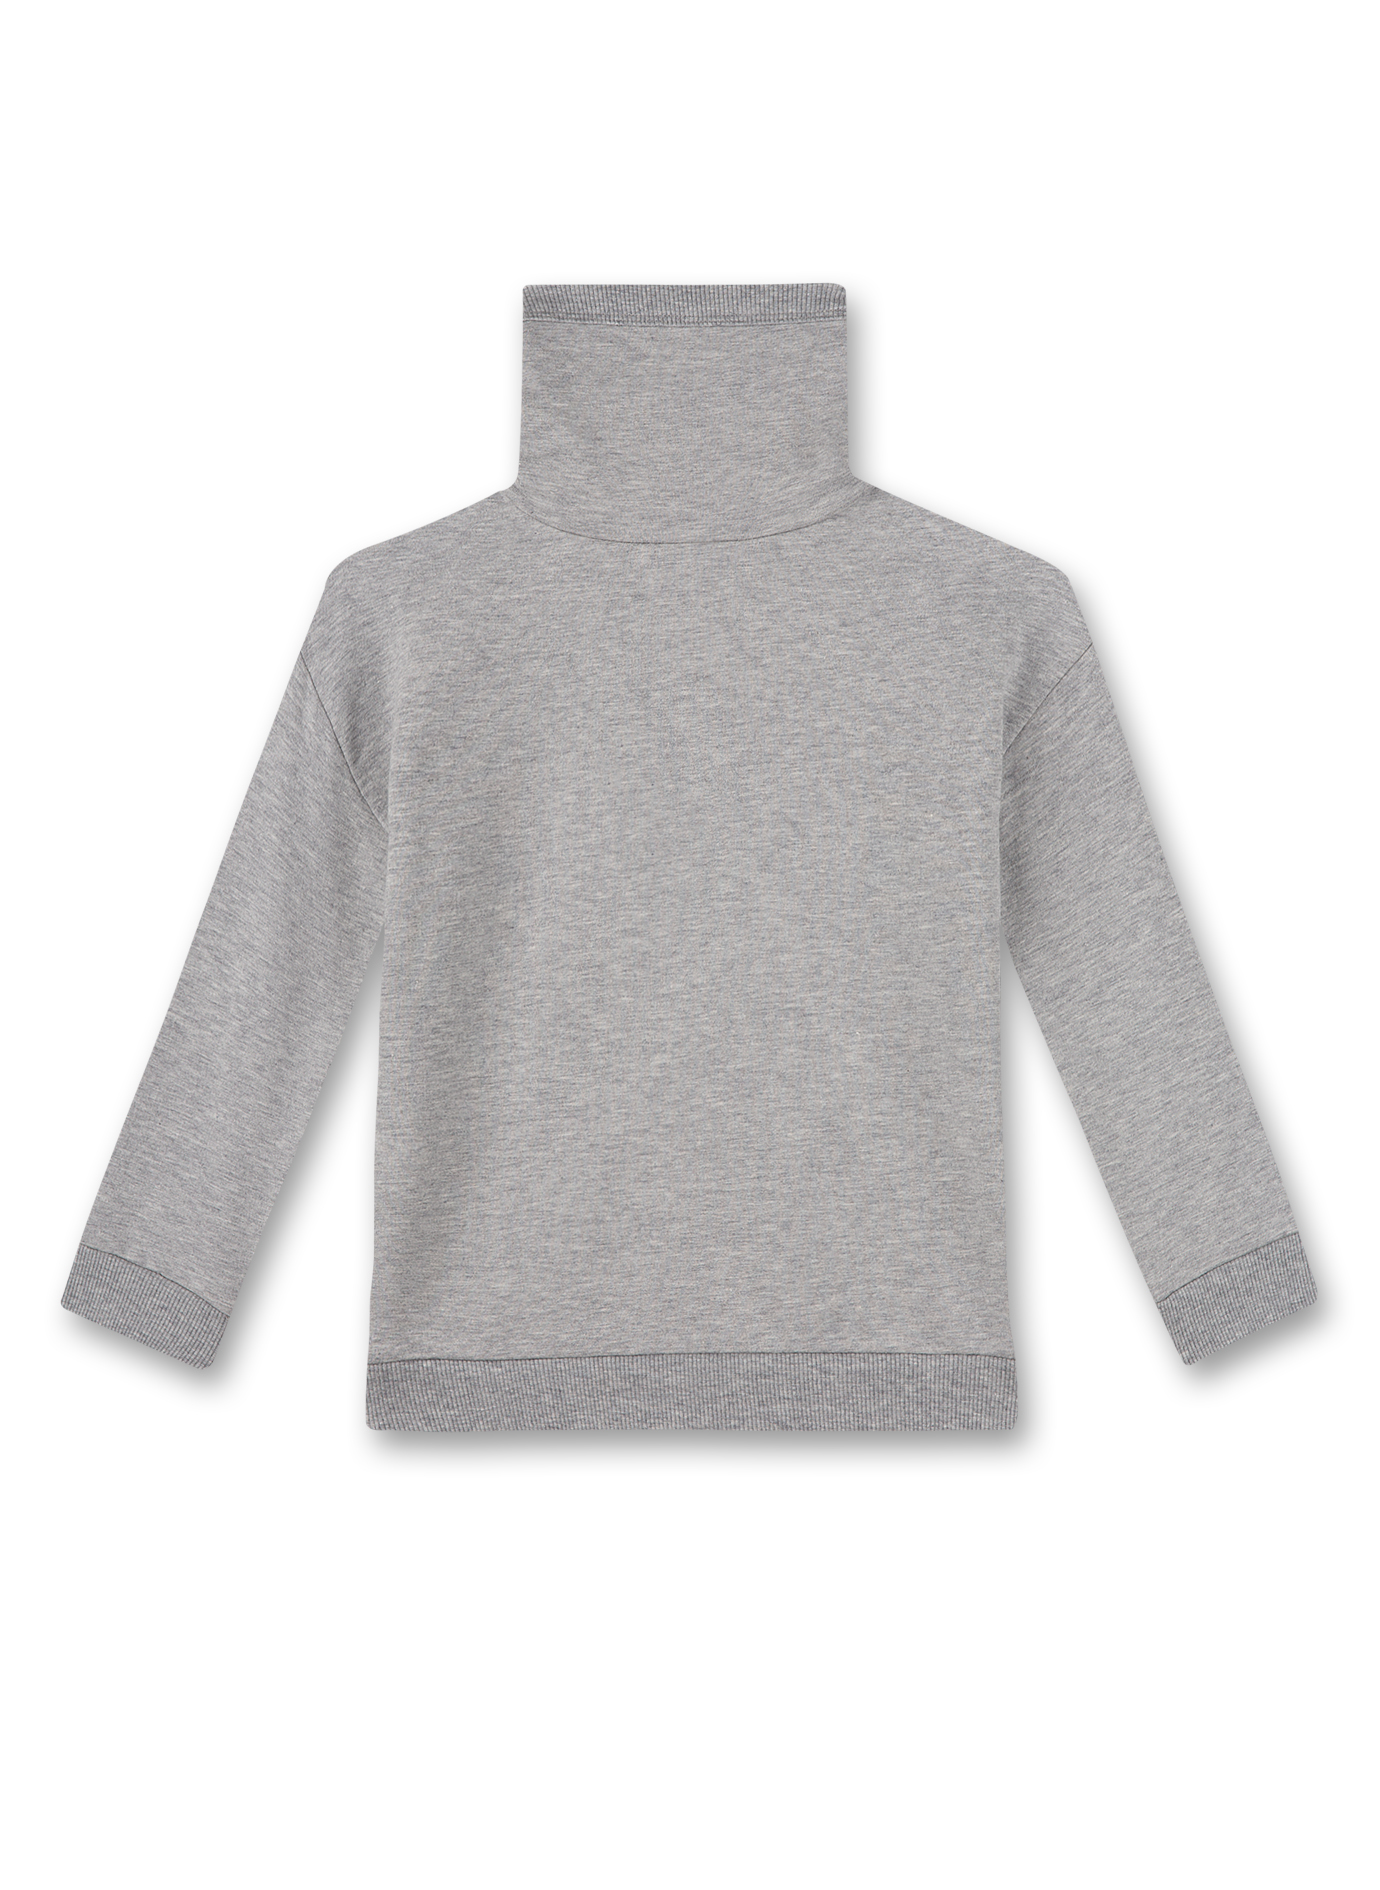 Jungen-Sweatshirt Graumelange